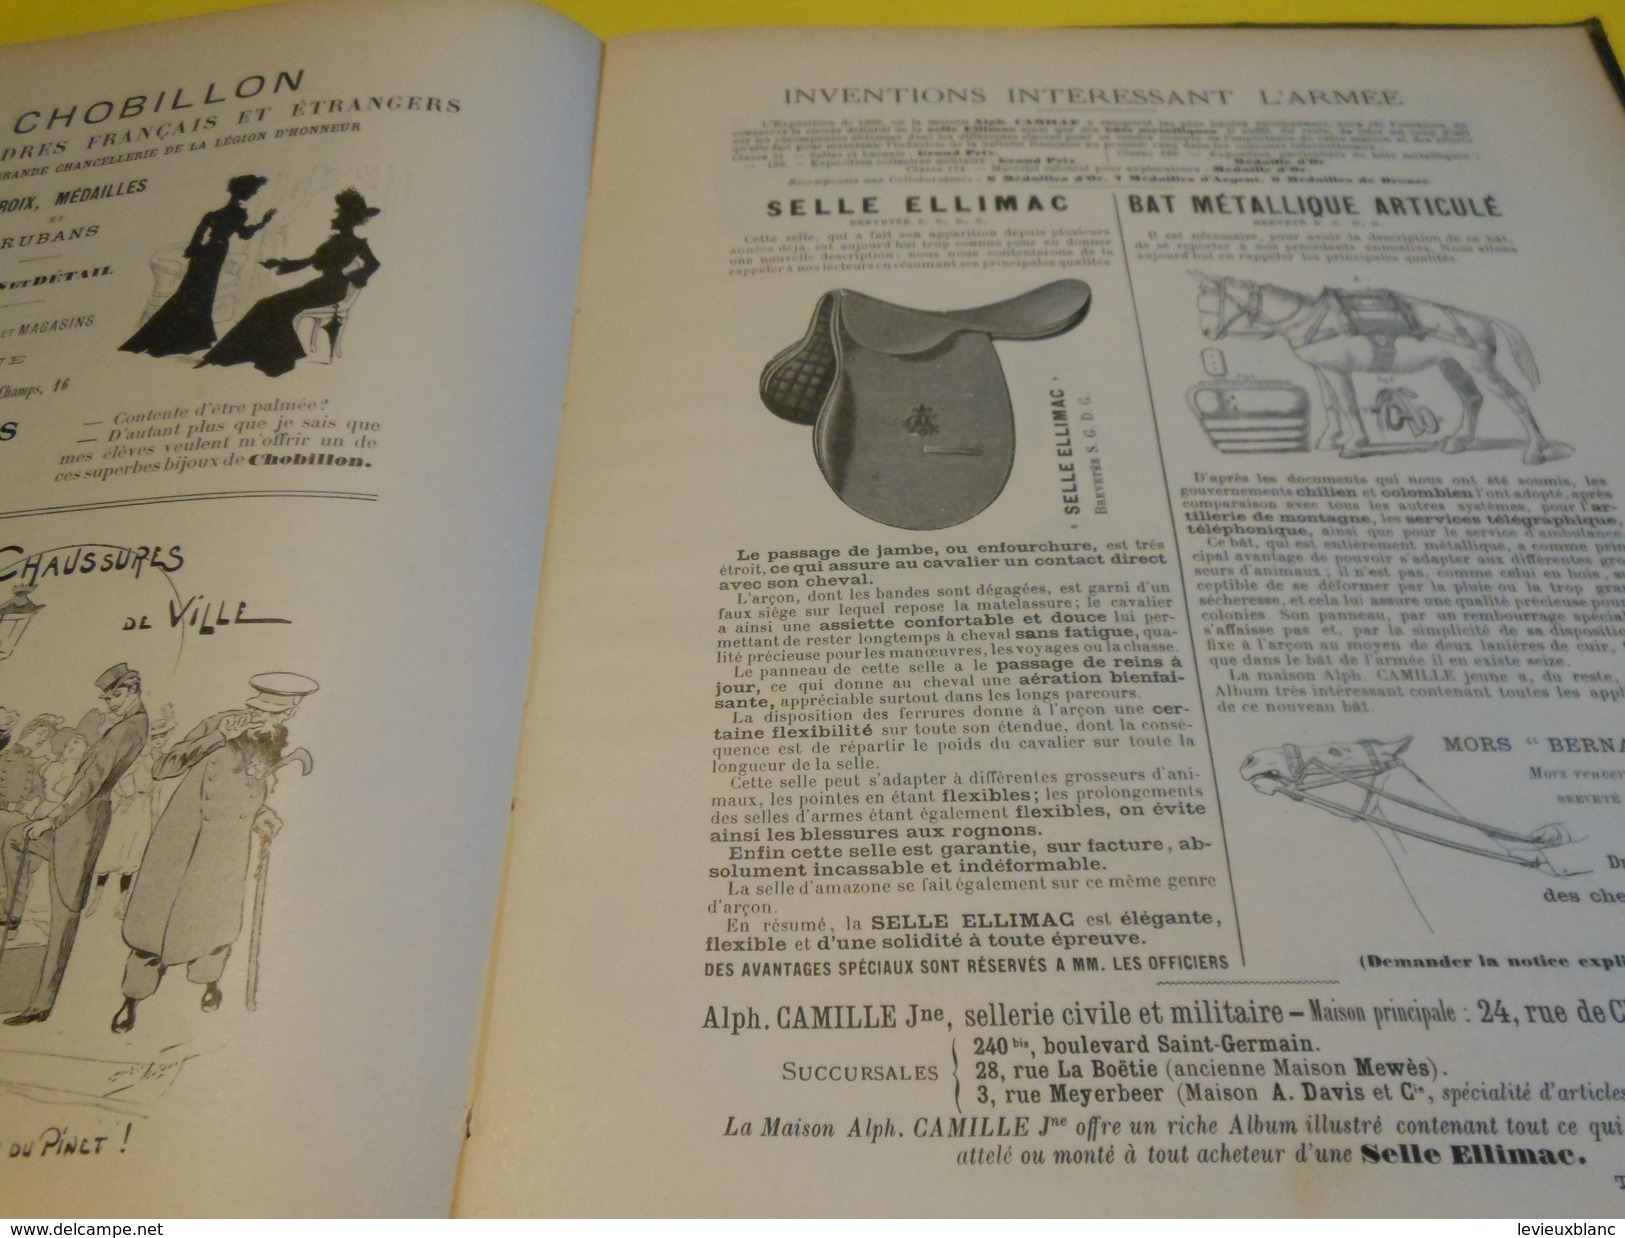 Annuaire Illustré de l'Armée Française/ Roger de Beauvoir /Plon-Nourrit éditeurs/dUBONNET:AmerPICON/1902    LIV113